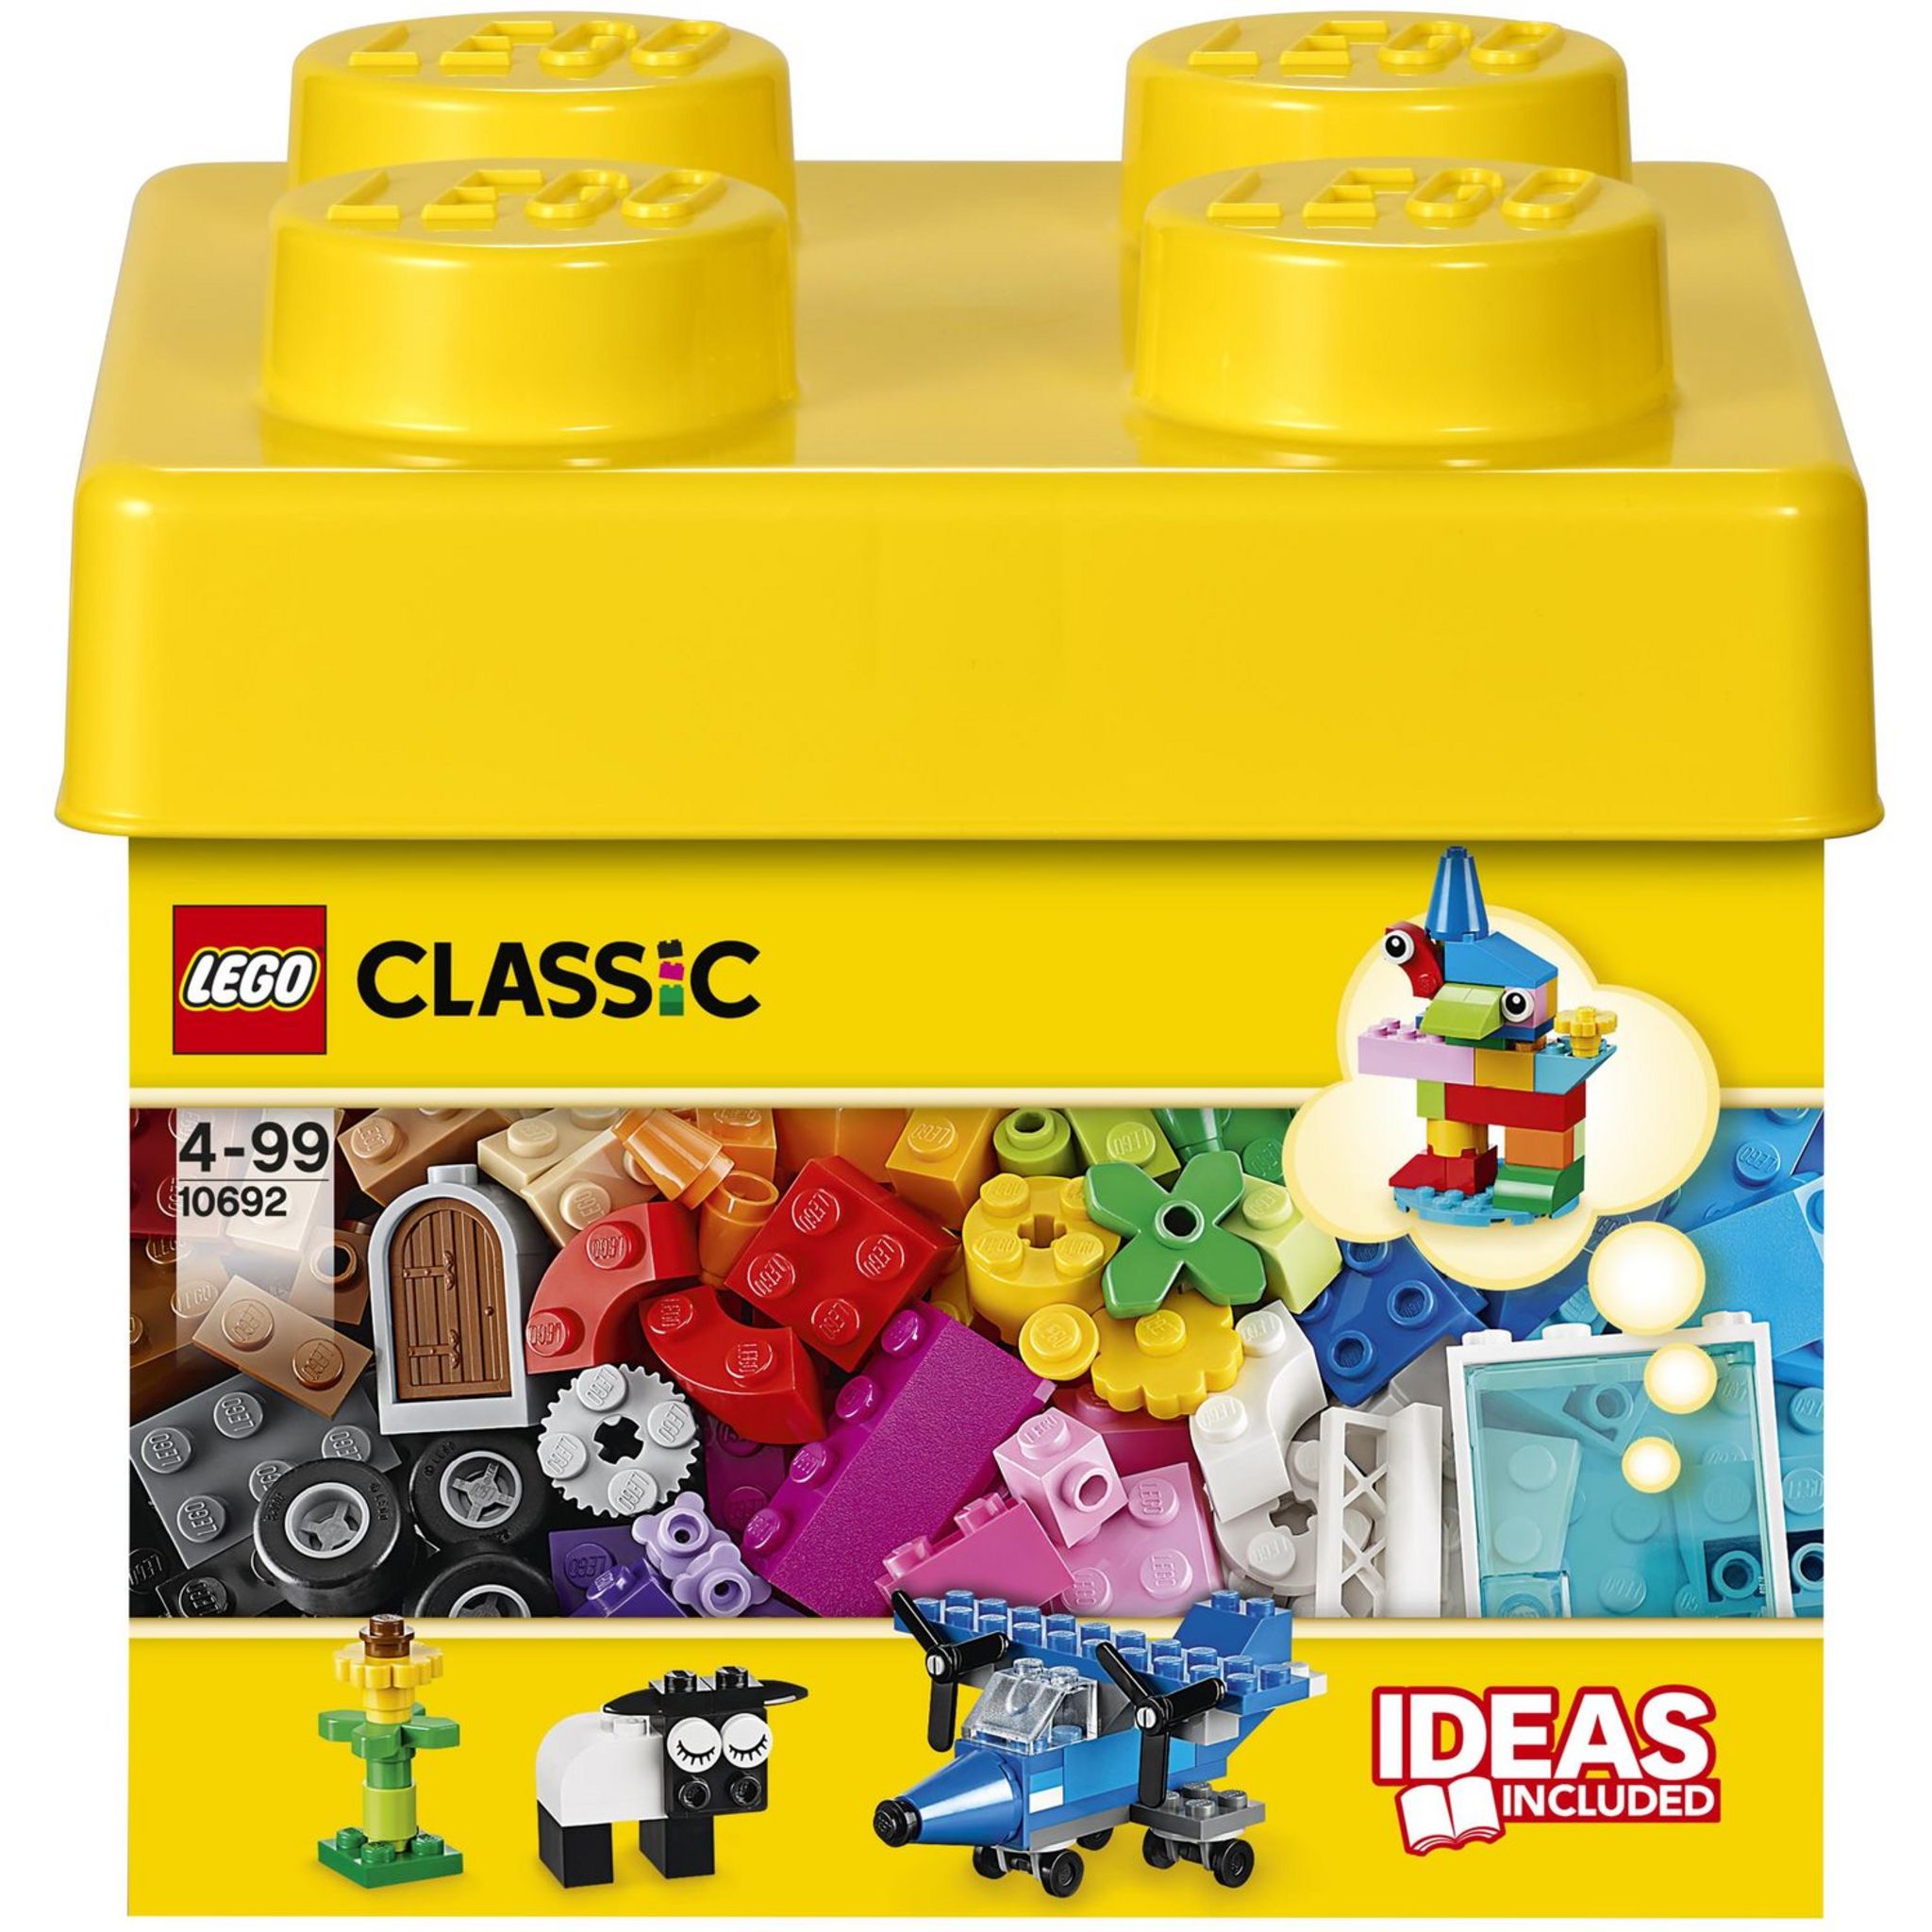 LEGO 11013 Classic Briques Transparentes Créatives: Set de Construction  pour Animaux Lion, Oiseau, Tortue, Idéal pour Stimuler la Créativité des  Enfants, Cadeau pour Enfants de 4 Ans et Plus : LEGO®: 